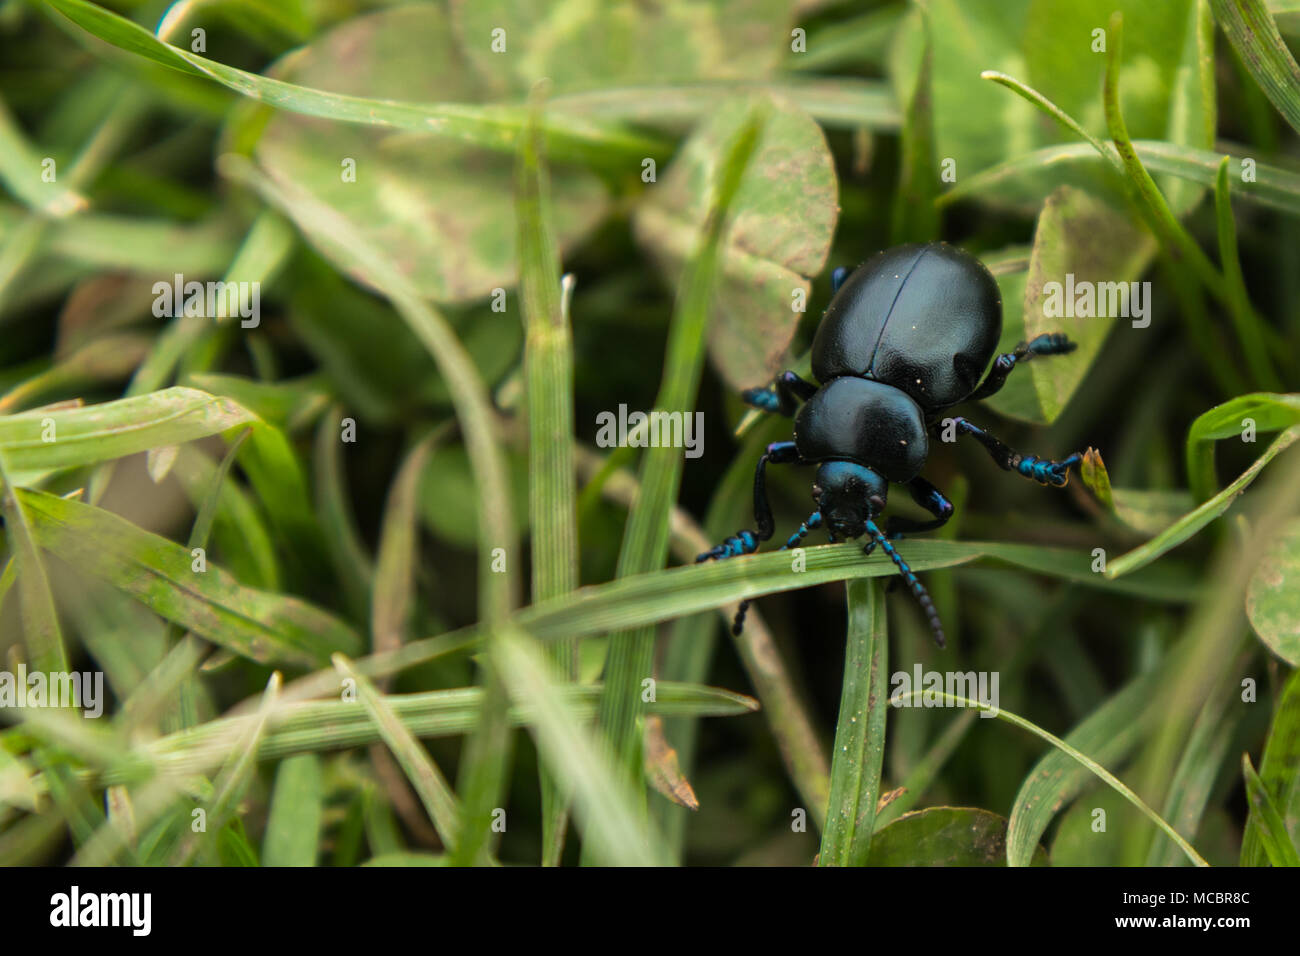 Schwarz blutige Nase Käfer kämpfen auf Gras mit blau irisierenden Füße, atenea und Kopf zu gehen. Stockfoto